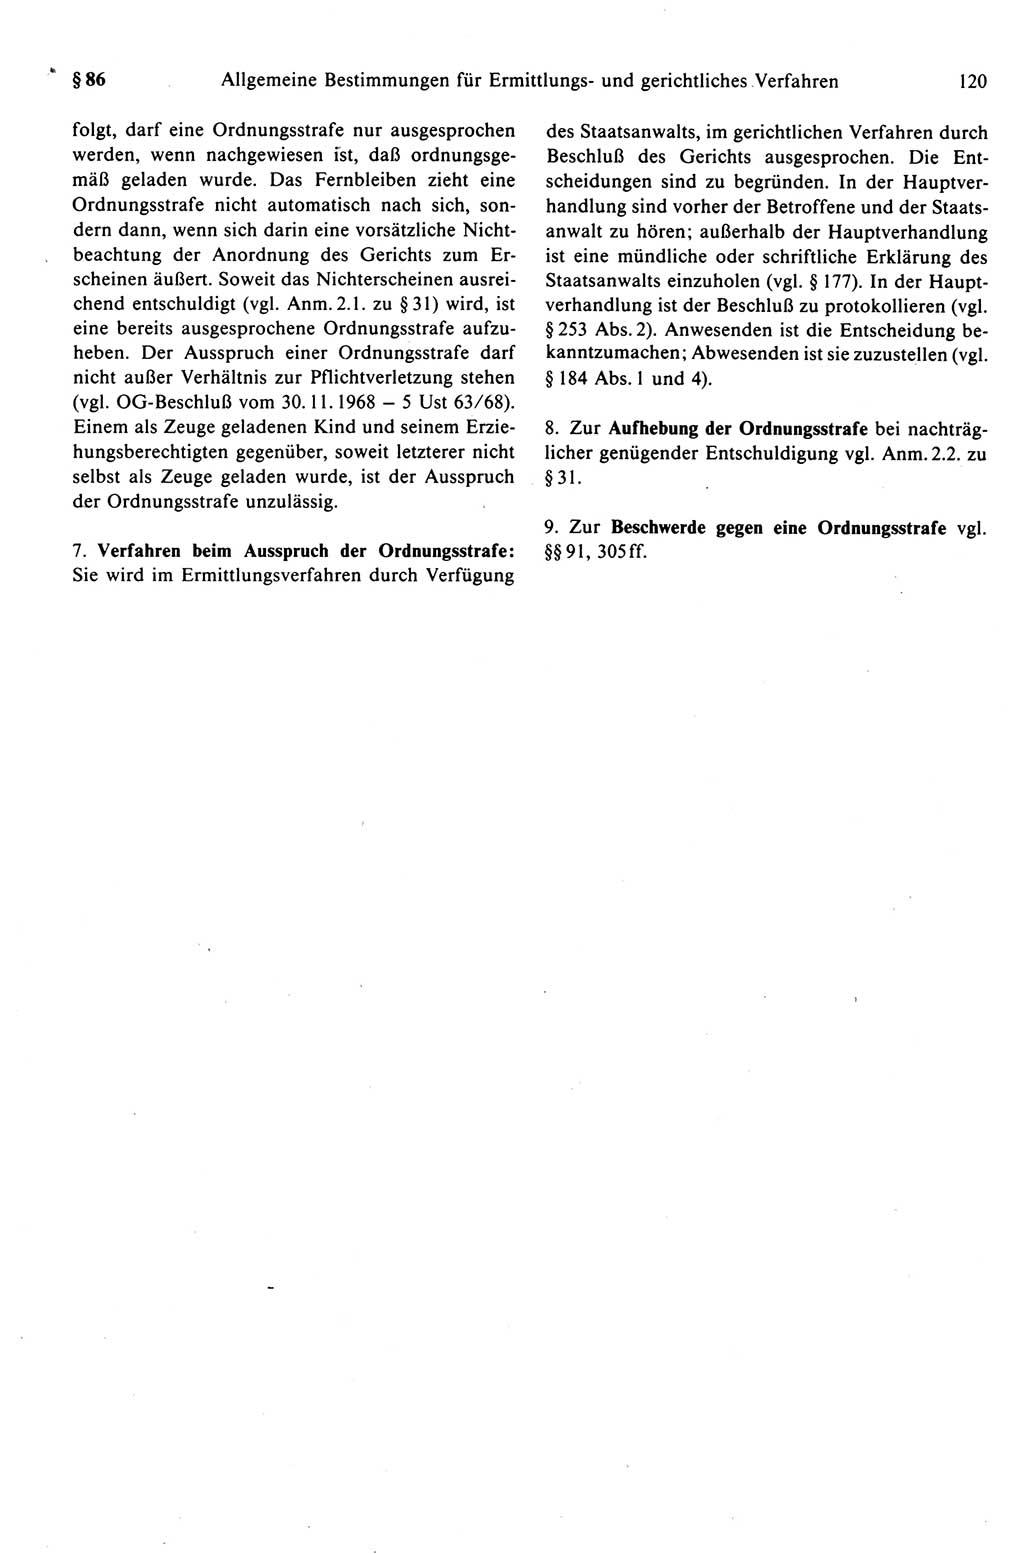 Strafprozeßrecht der DDR (Deutsche Demokratische Republik), Kommentar zur Strafprozeßordnung (StPO) 1989, Seite 120 (Strafprozeßr. DDR Komm. StPO 1989, S. 120)